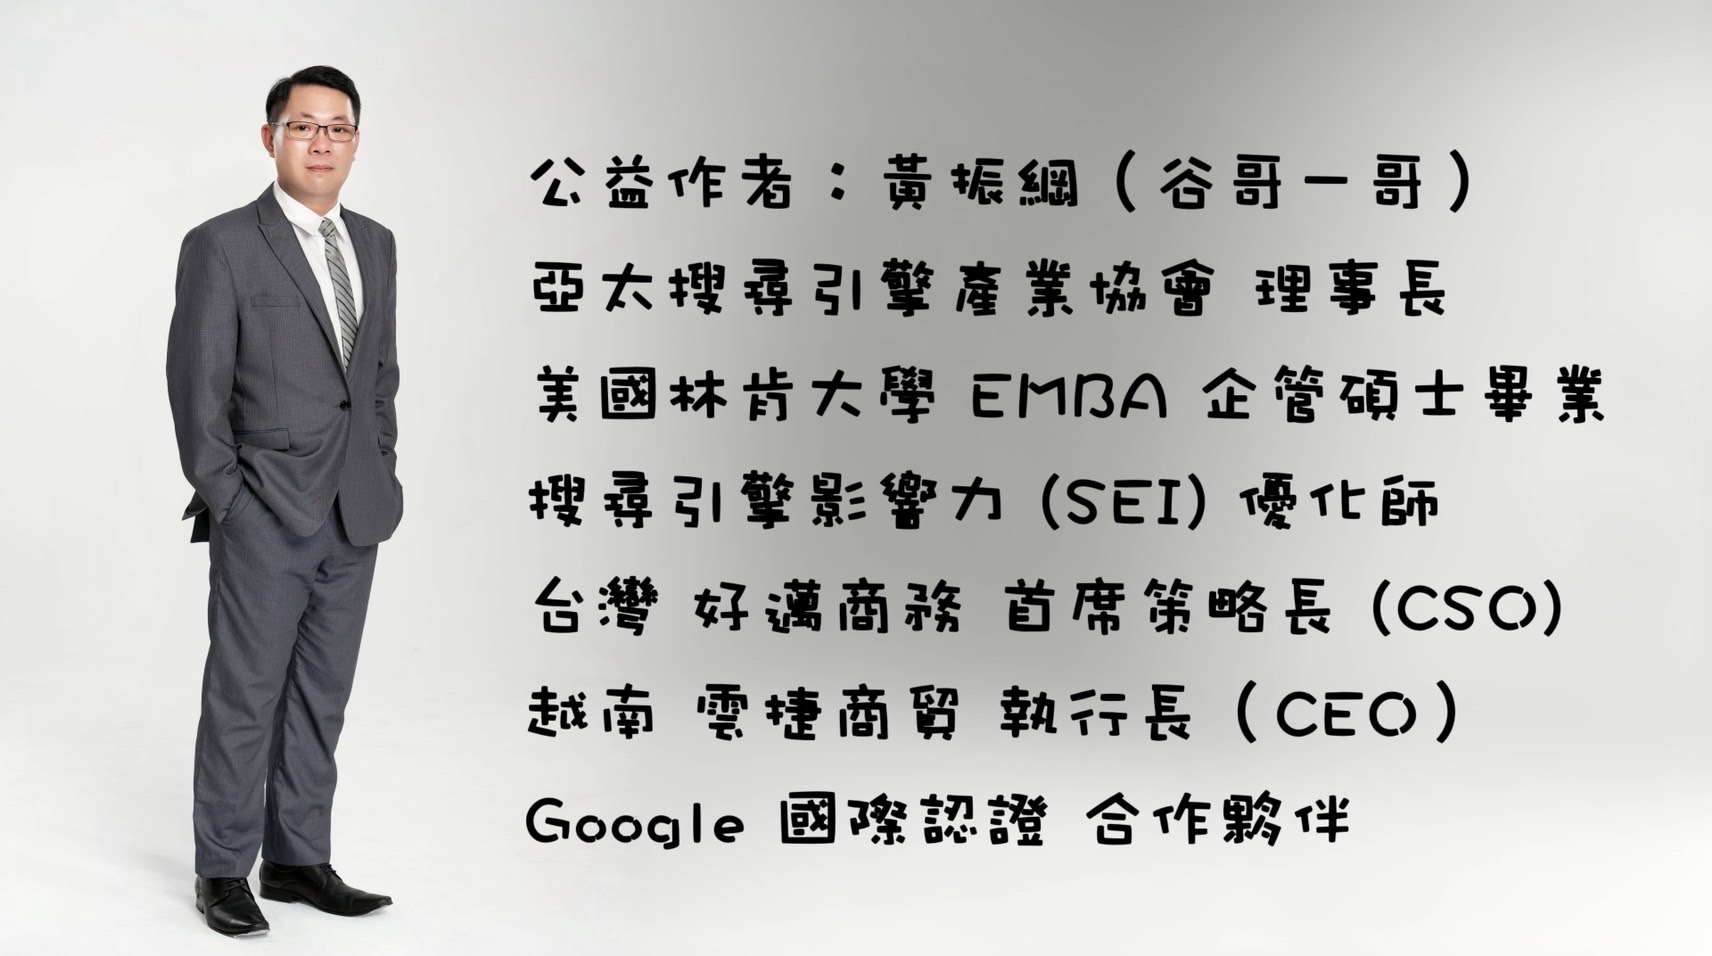 公益作者：黃振綱（谷哥一哥），黃振綱是亞太搜尋引擎產業協會的理事長，擁有美國林肯大學企管碩士學位，是搜尋引擎影響力（SEI）的優化師。他同時擔任台灣好邁商務的首席策略長（CSO）以及越南雲捷商貿的執行長（CEO）。此外，他也是Google國際認證的合作夥伴。